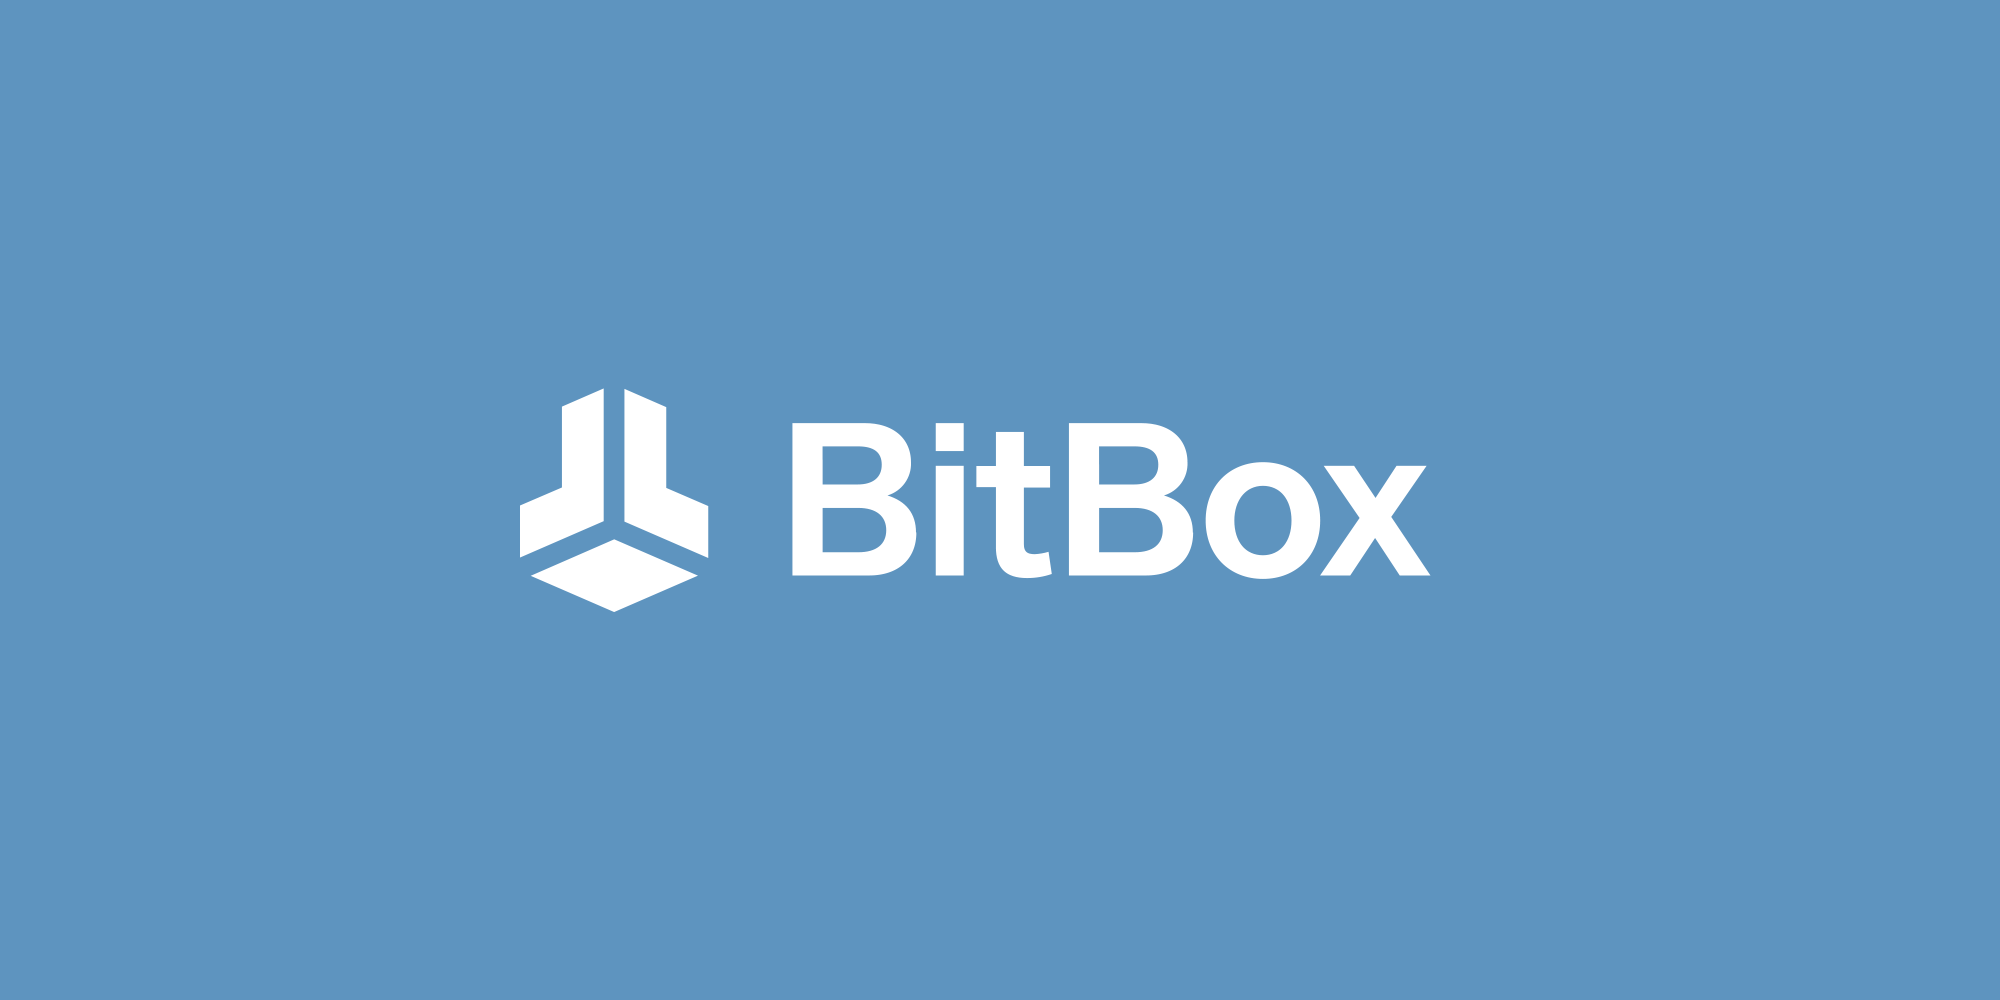 BitBox App v4.37.1 Released, Shift Crypto Rebranded To BitBox